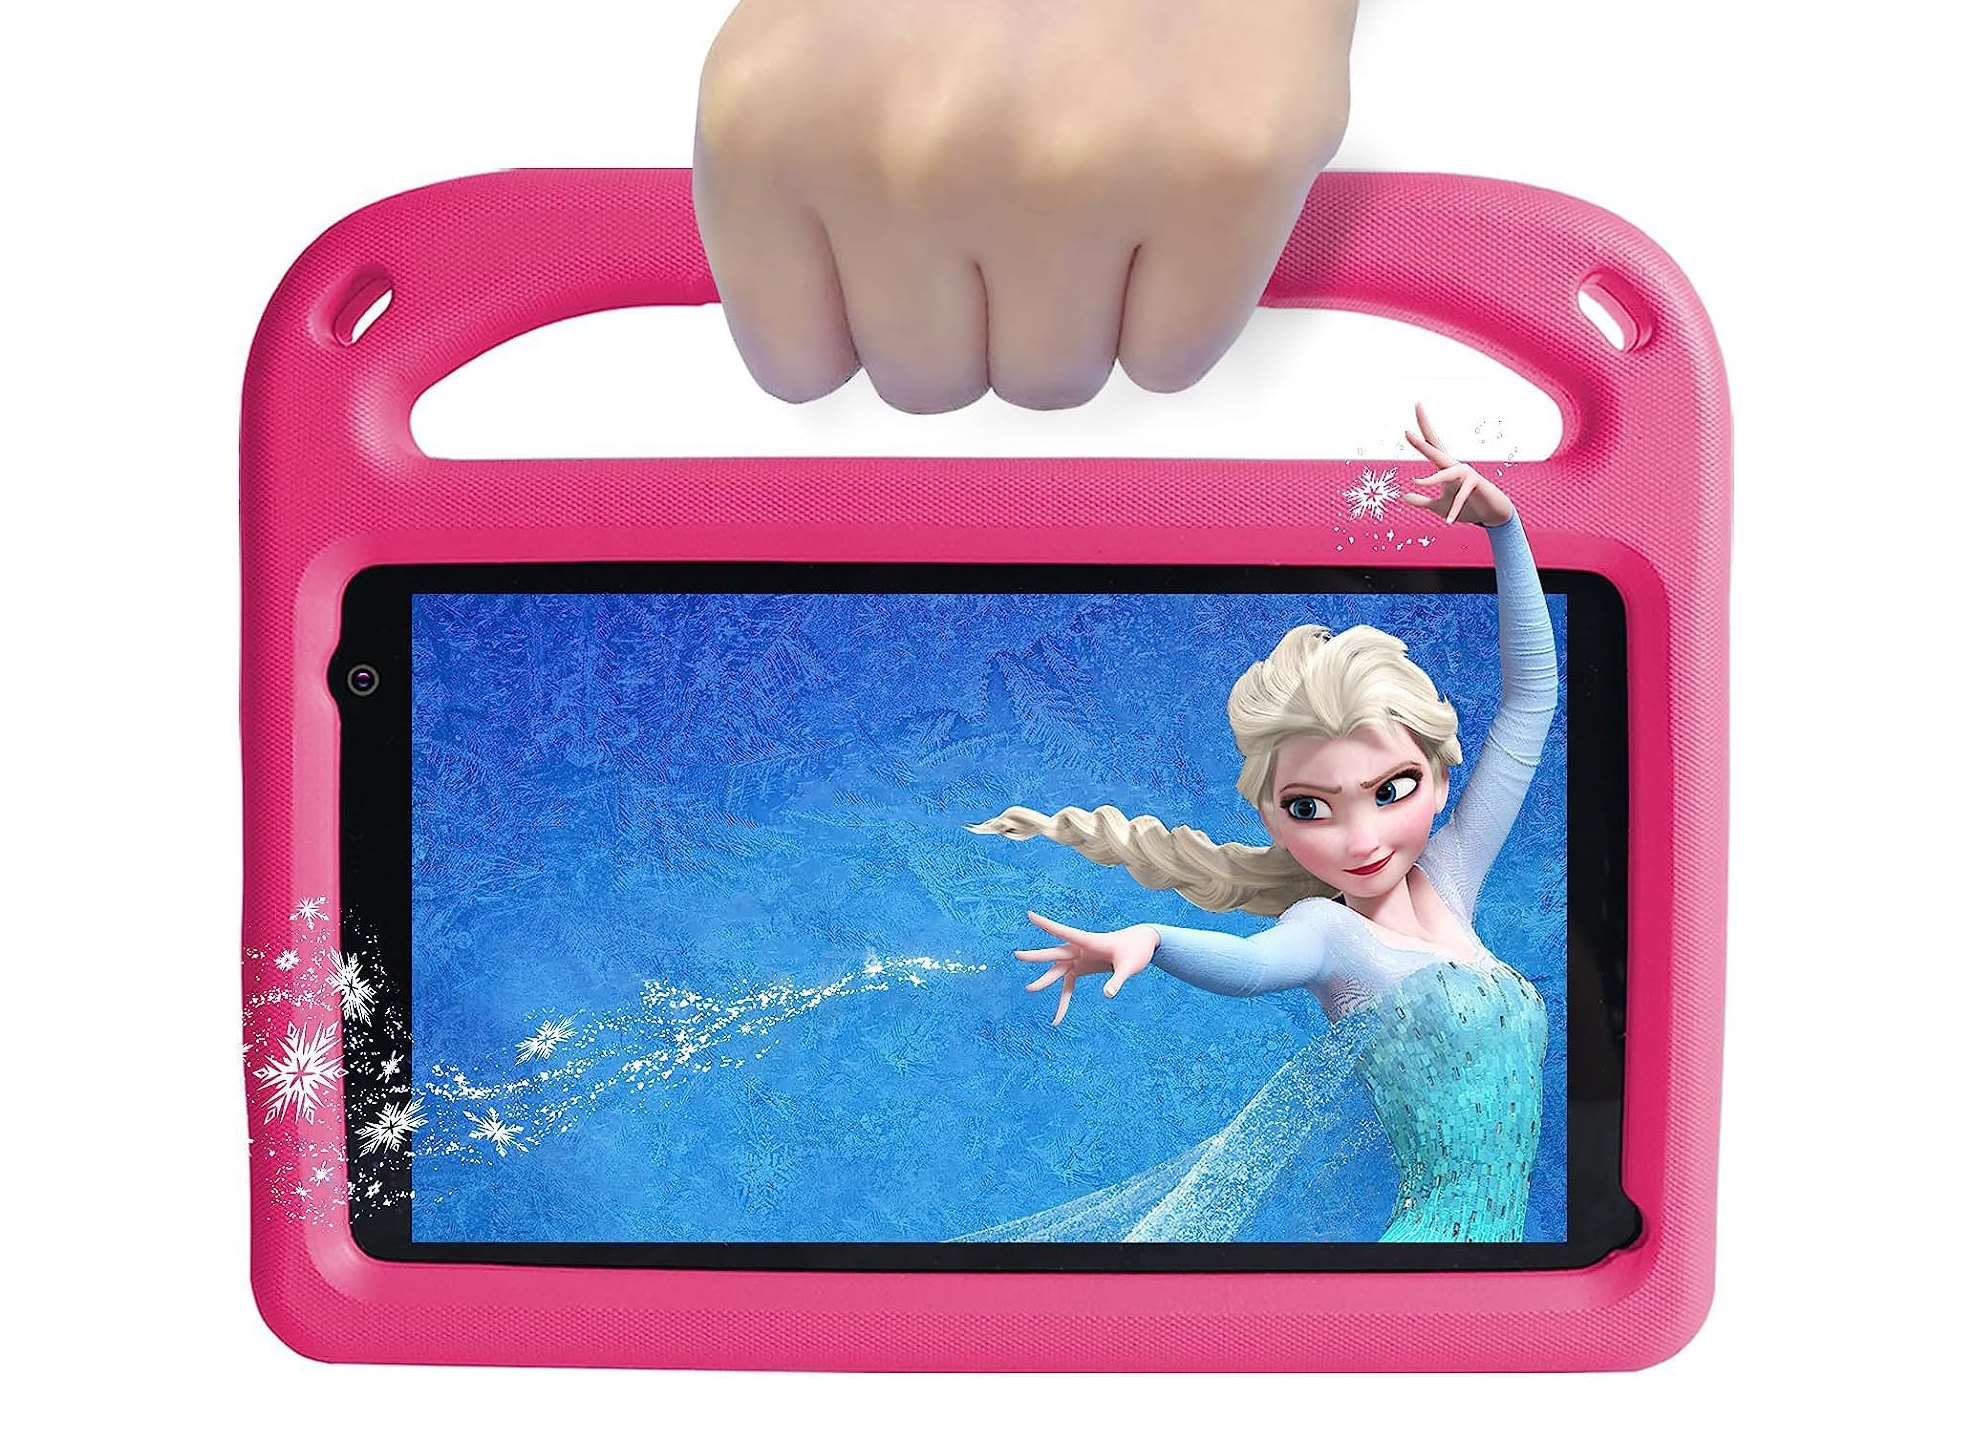 Nokia T10 Kids Edition, il tablet pensato per tutti i bambini